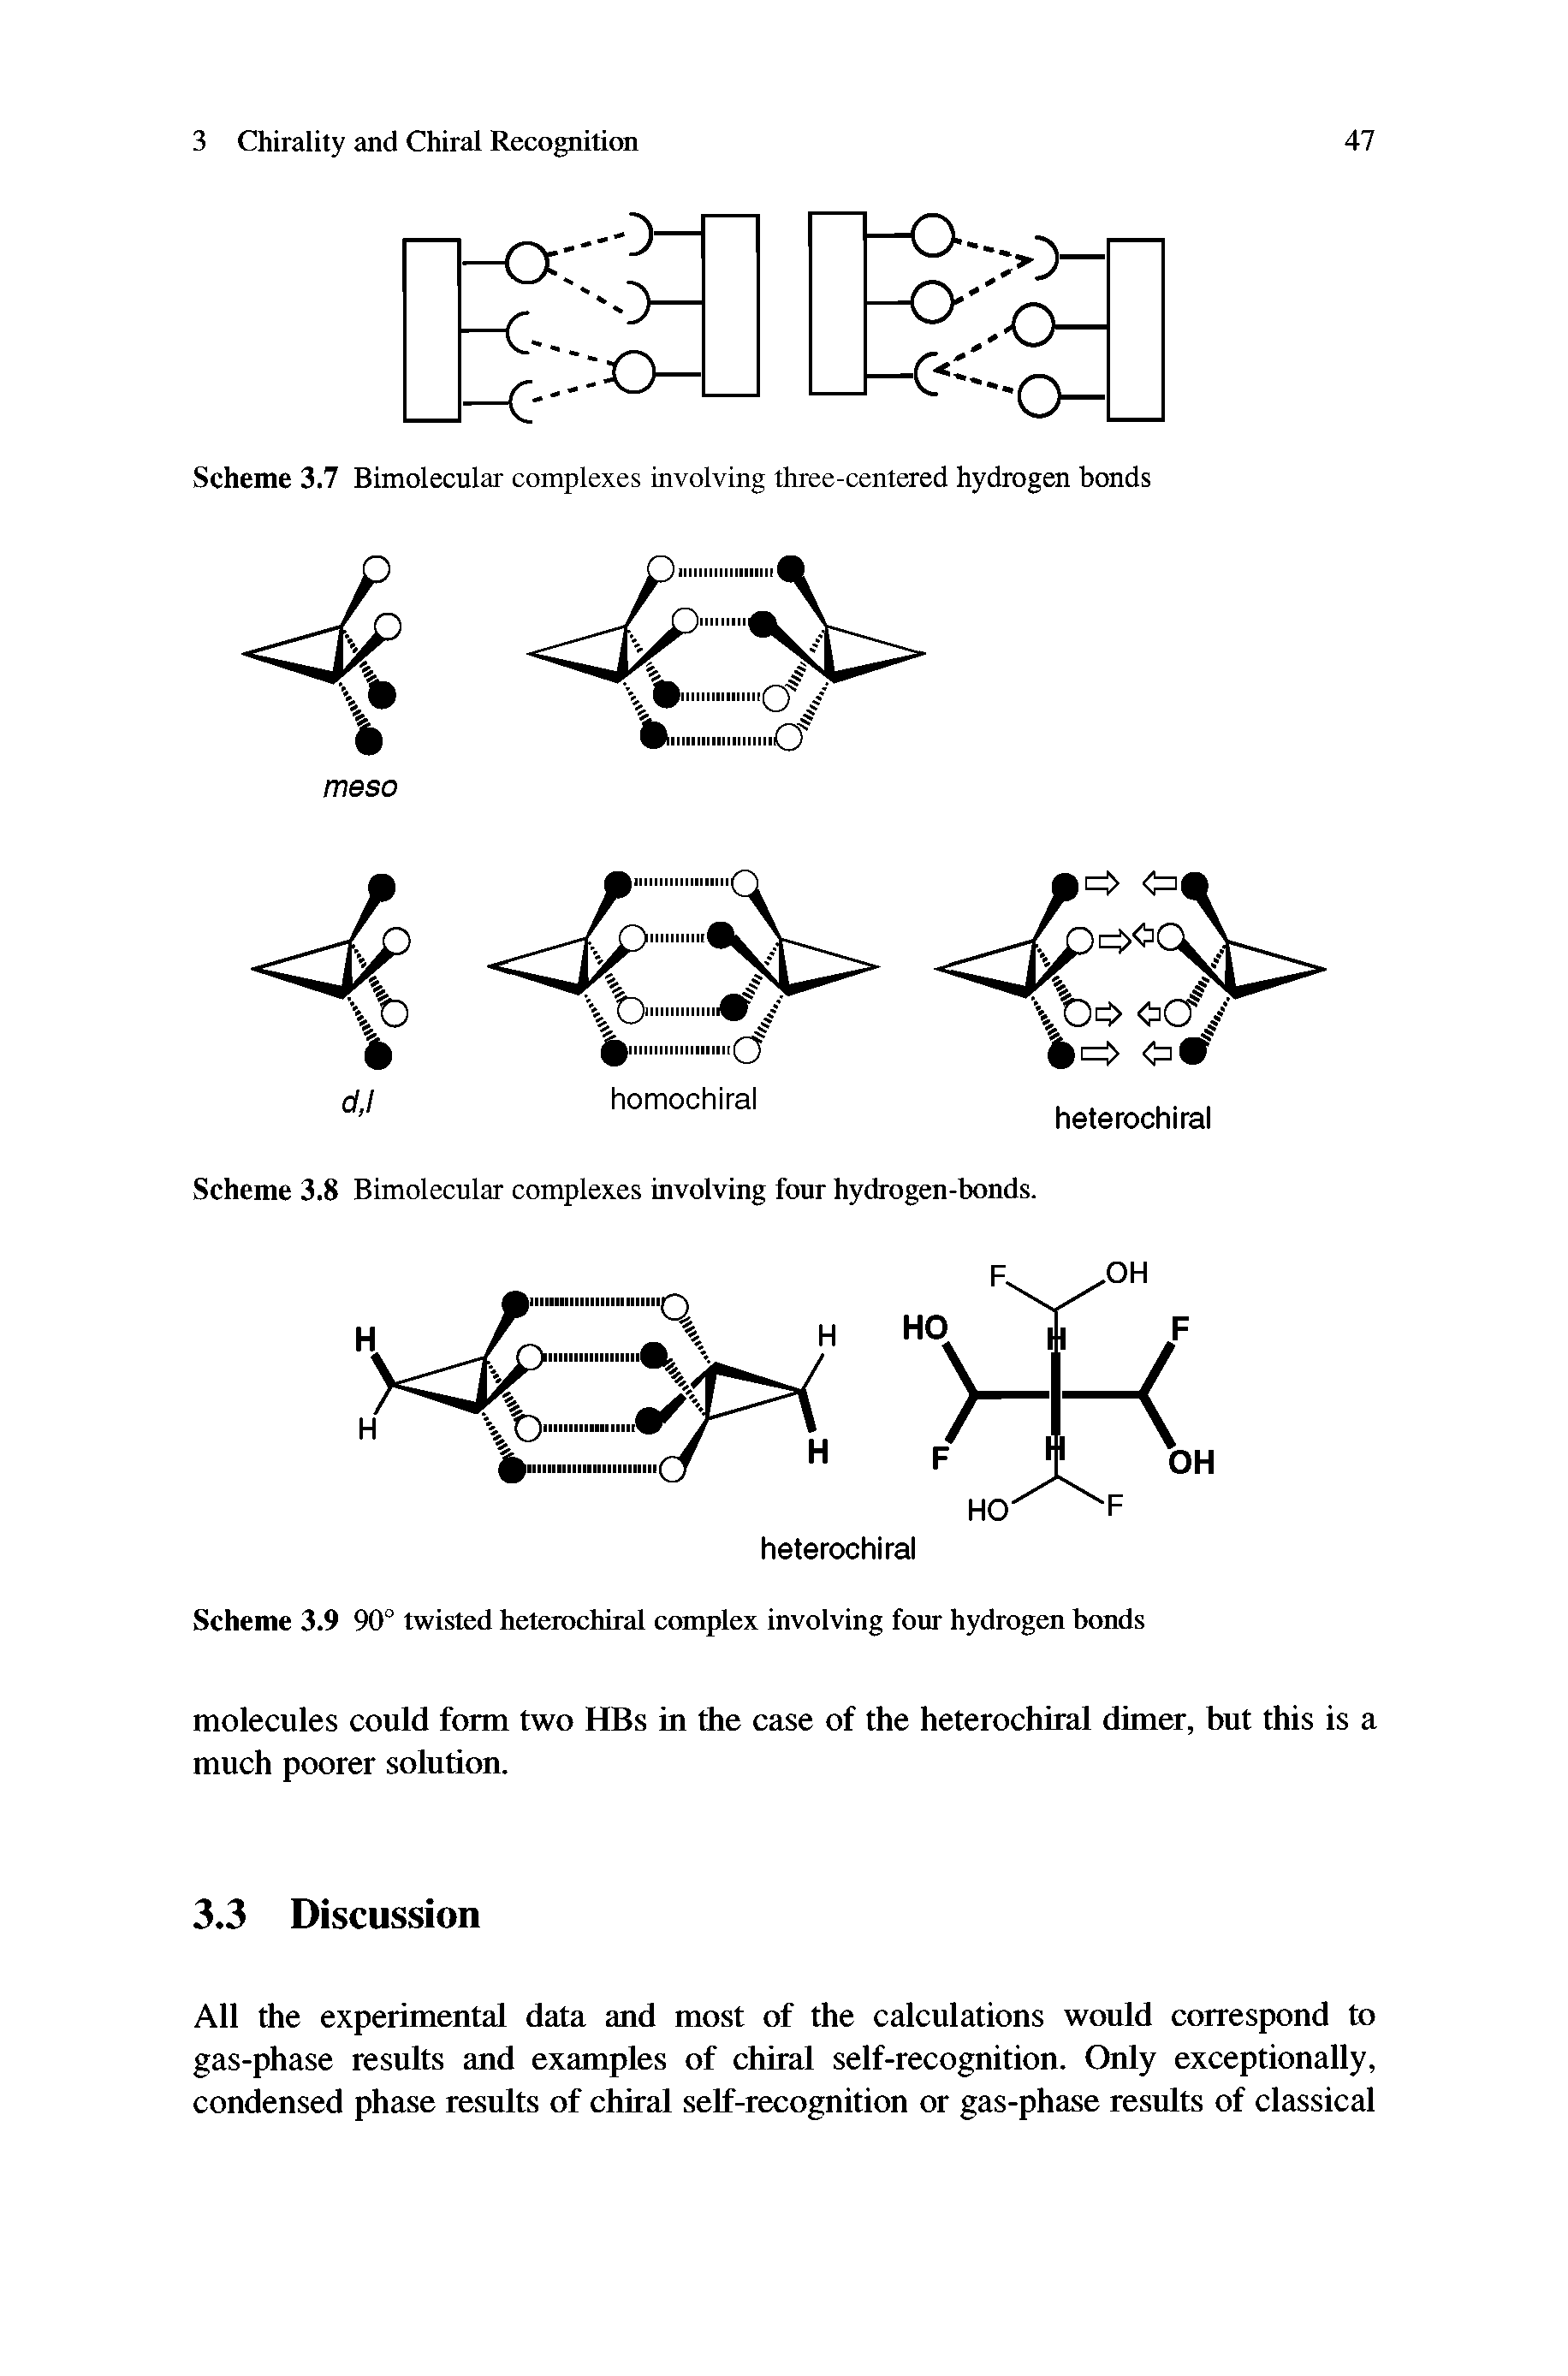 Scheme 3.7 Bimolecular complexes involving three-centered hydrogen bonds...